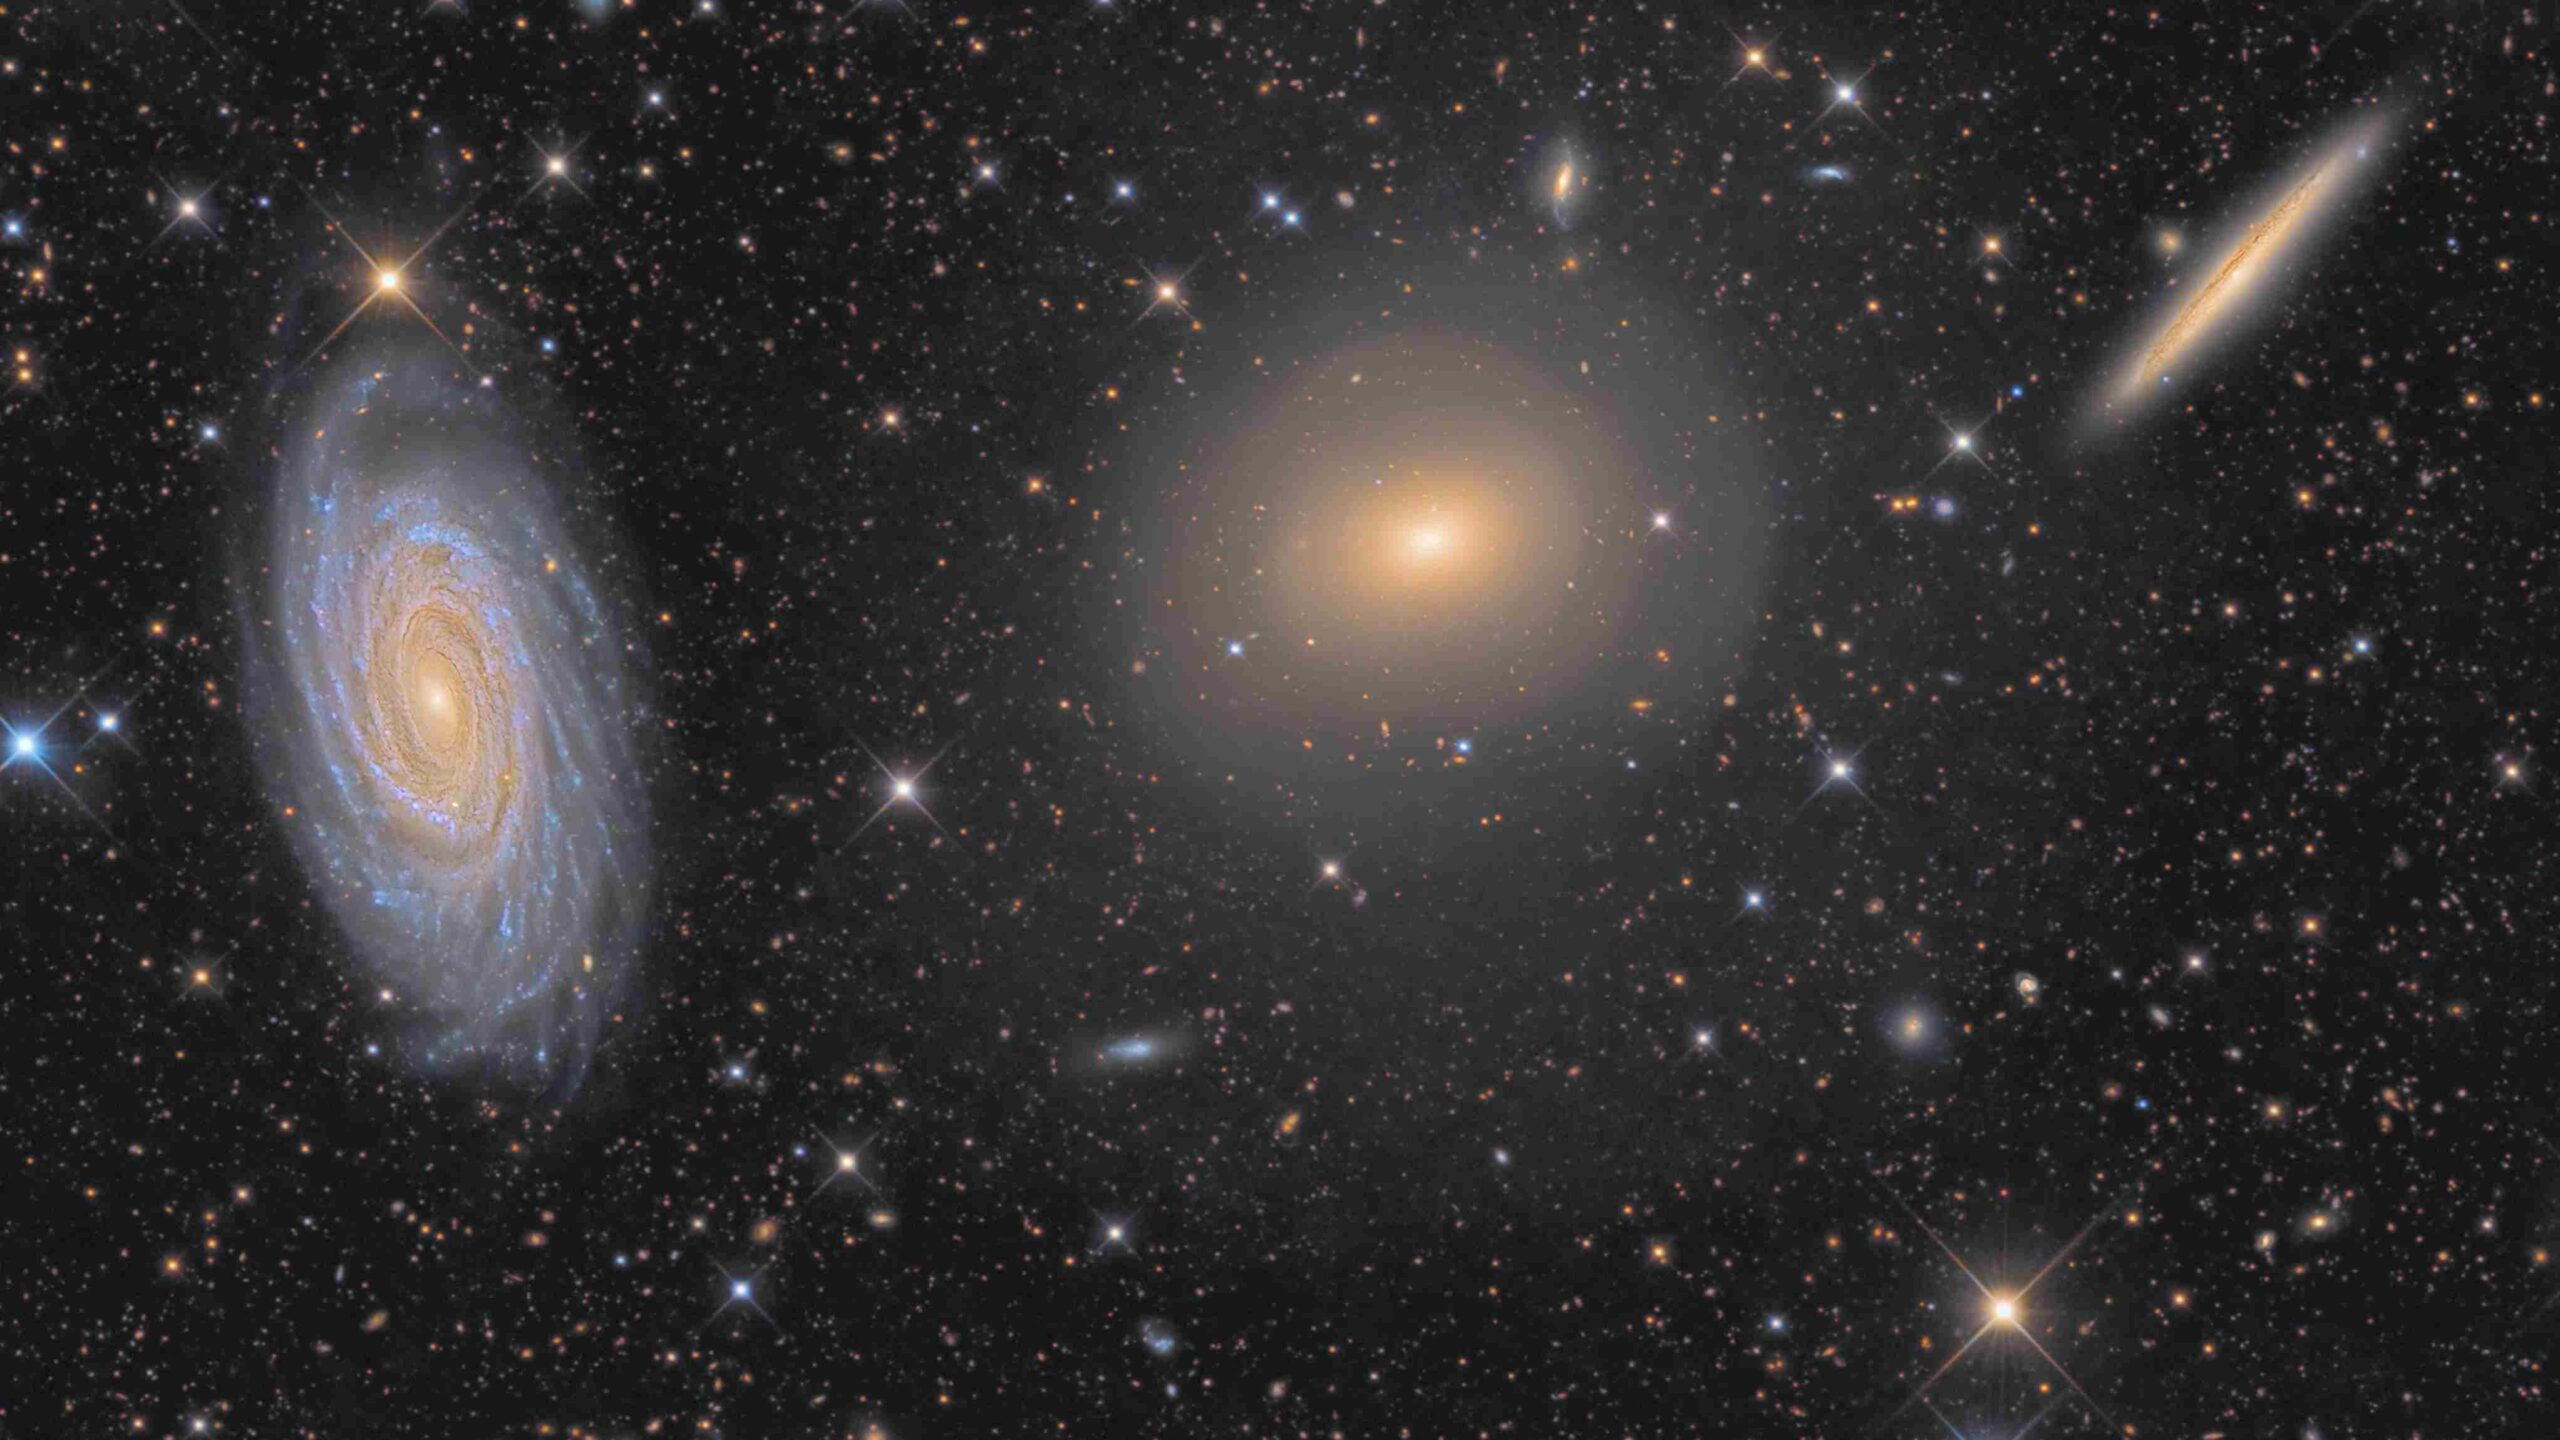 Este trio de galáxias está localizado na boreal Constelação de Draco (“O Dragão”). Da esquerda para a direita, estão a espiral NGC 5985, a galáxia elíptica NGC 5982 e a espiral NGC 5981. Embora seja demasiado pequeno para ser um aglomerado e não tenha sido catalogado como um grupo compacto, as três galáxias ficam a cerca de 100 milhões de anos-luz do planeta Terra. O núcleo brilhante da impressionante espiral NGC 5985 mostra emissões proeminentes em comprimentos de onda específicos de luz, o que a torna uma Seyfert, um tipo de galáxia com núcleo ativo. Este registro também sugere um halo tênue e escuro, junto com conchas de bordas afiadas que cercam a elíptica NGC 5982, uma evidência de fusões galácticas passadas